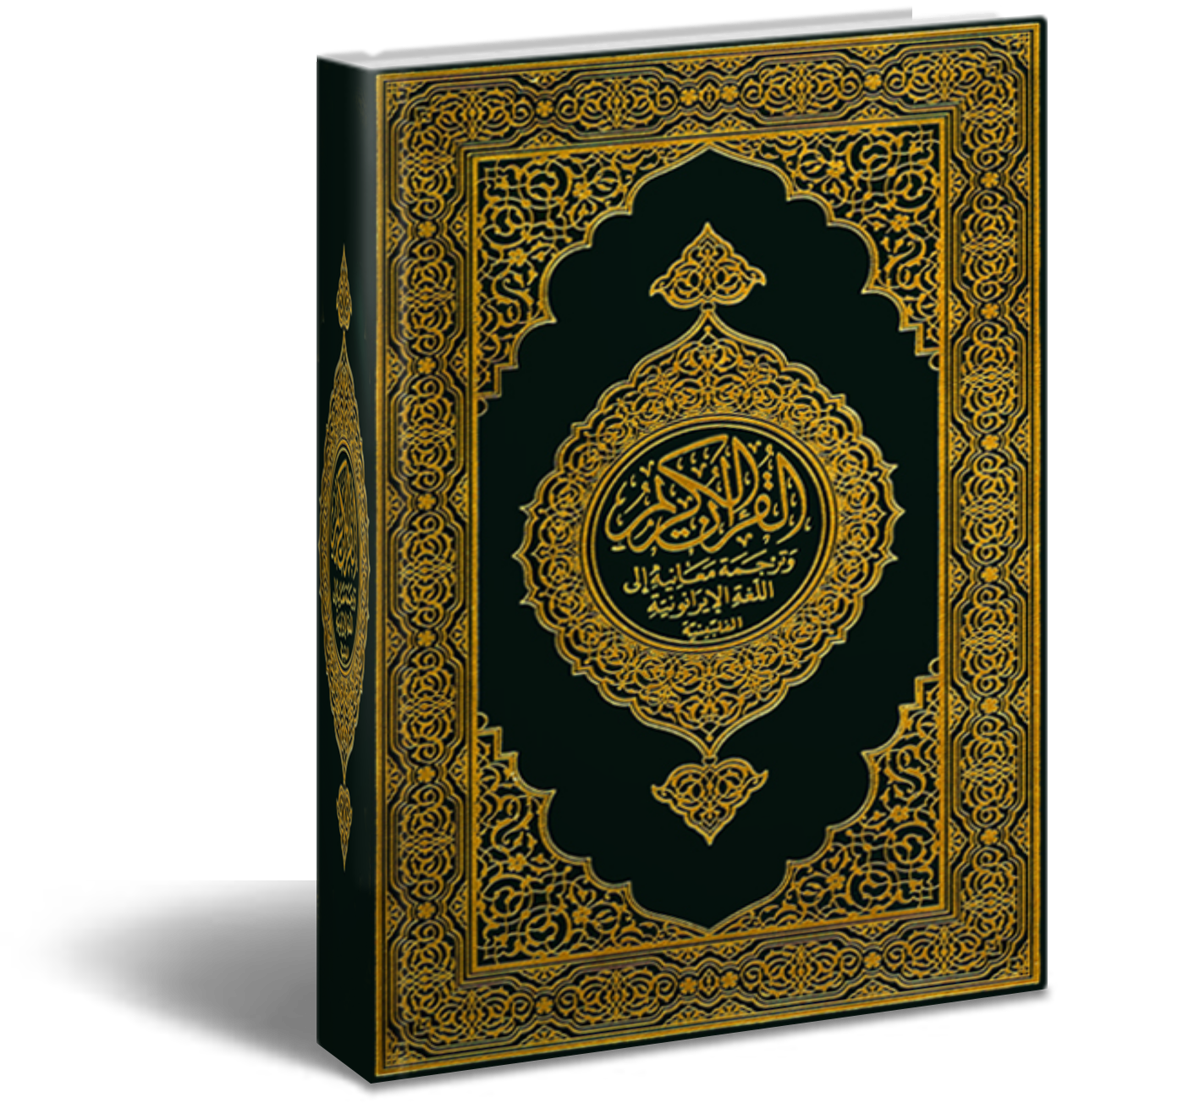 القرآن الكريم كامل بصوت جميع القراء وجودة عالية جداً mp3 الإسلام اليوم